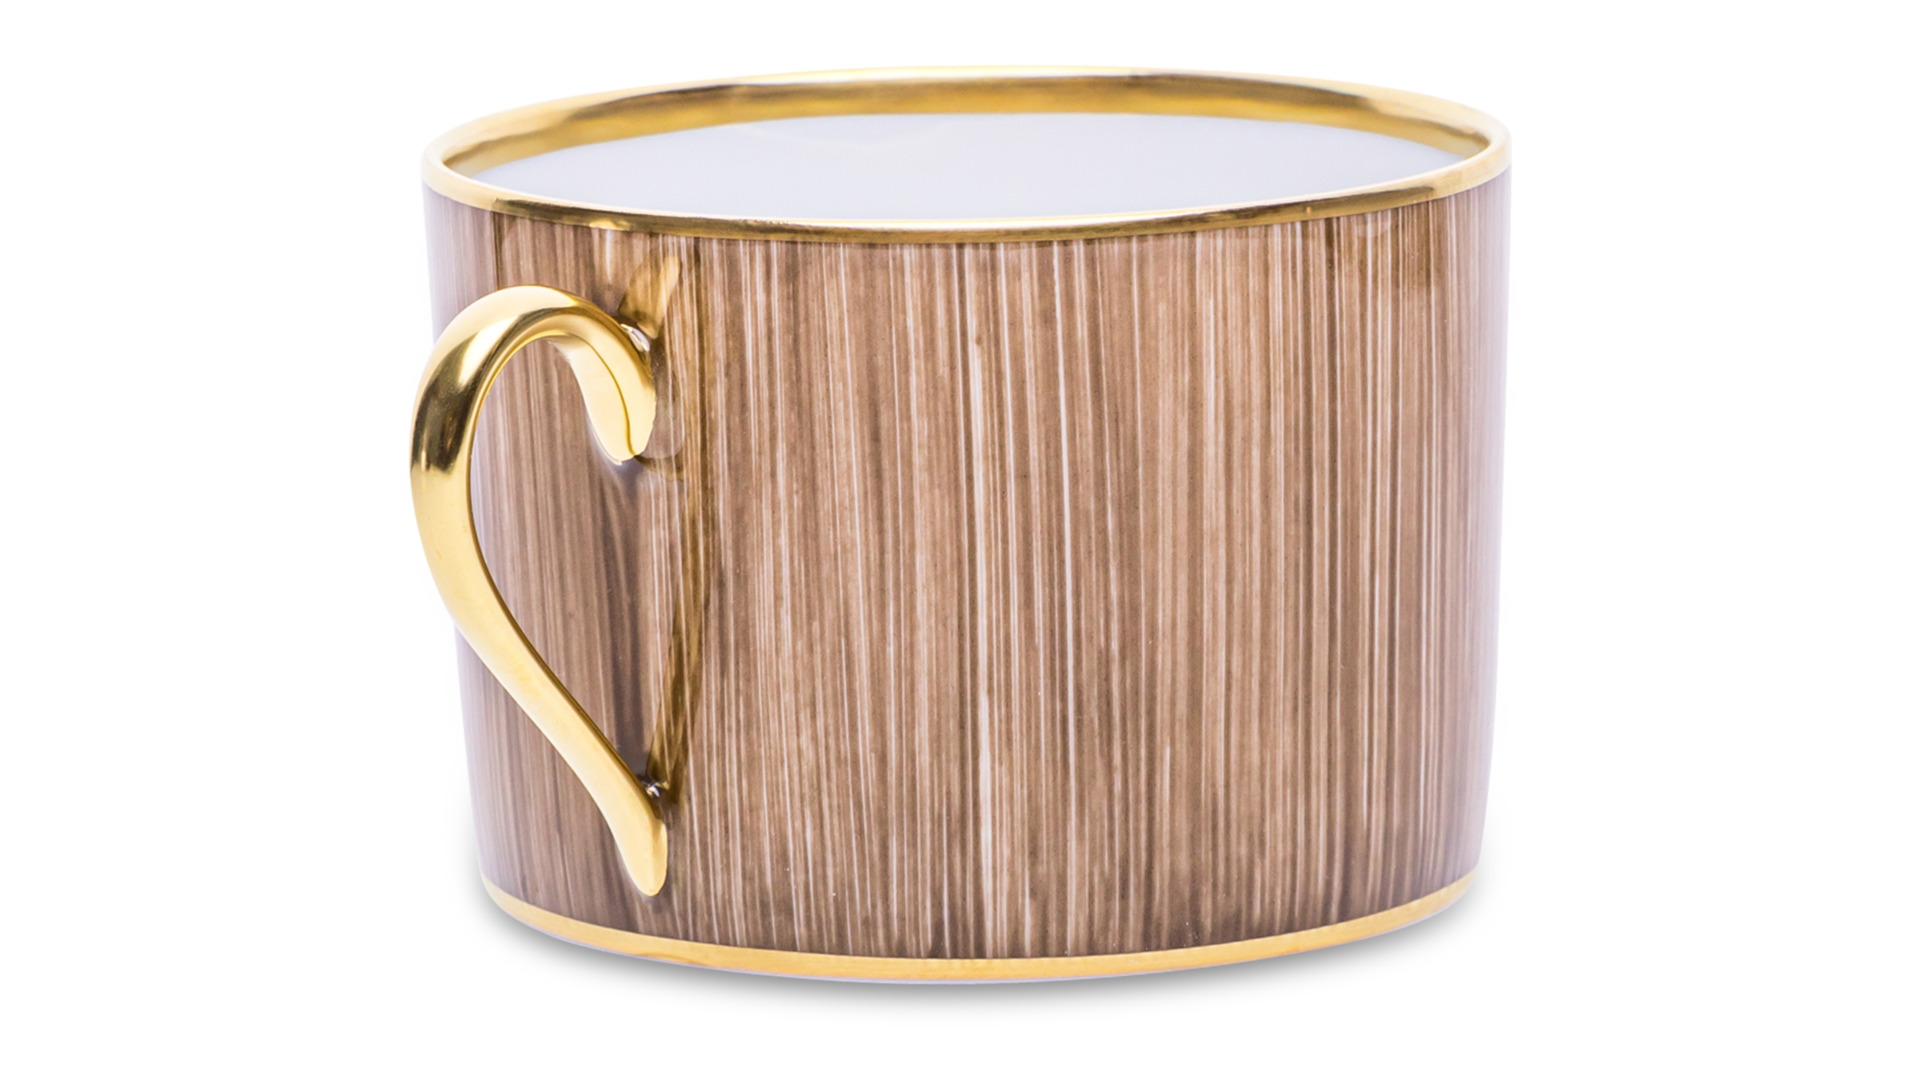 Чашка чайная с блюдцем Legle Карбон 250 мл, фарфор, темно-коричневая, матовый золотой кант